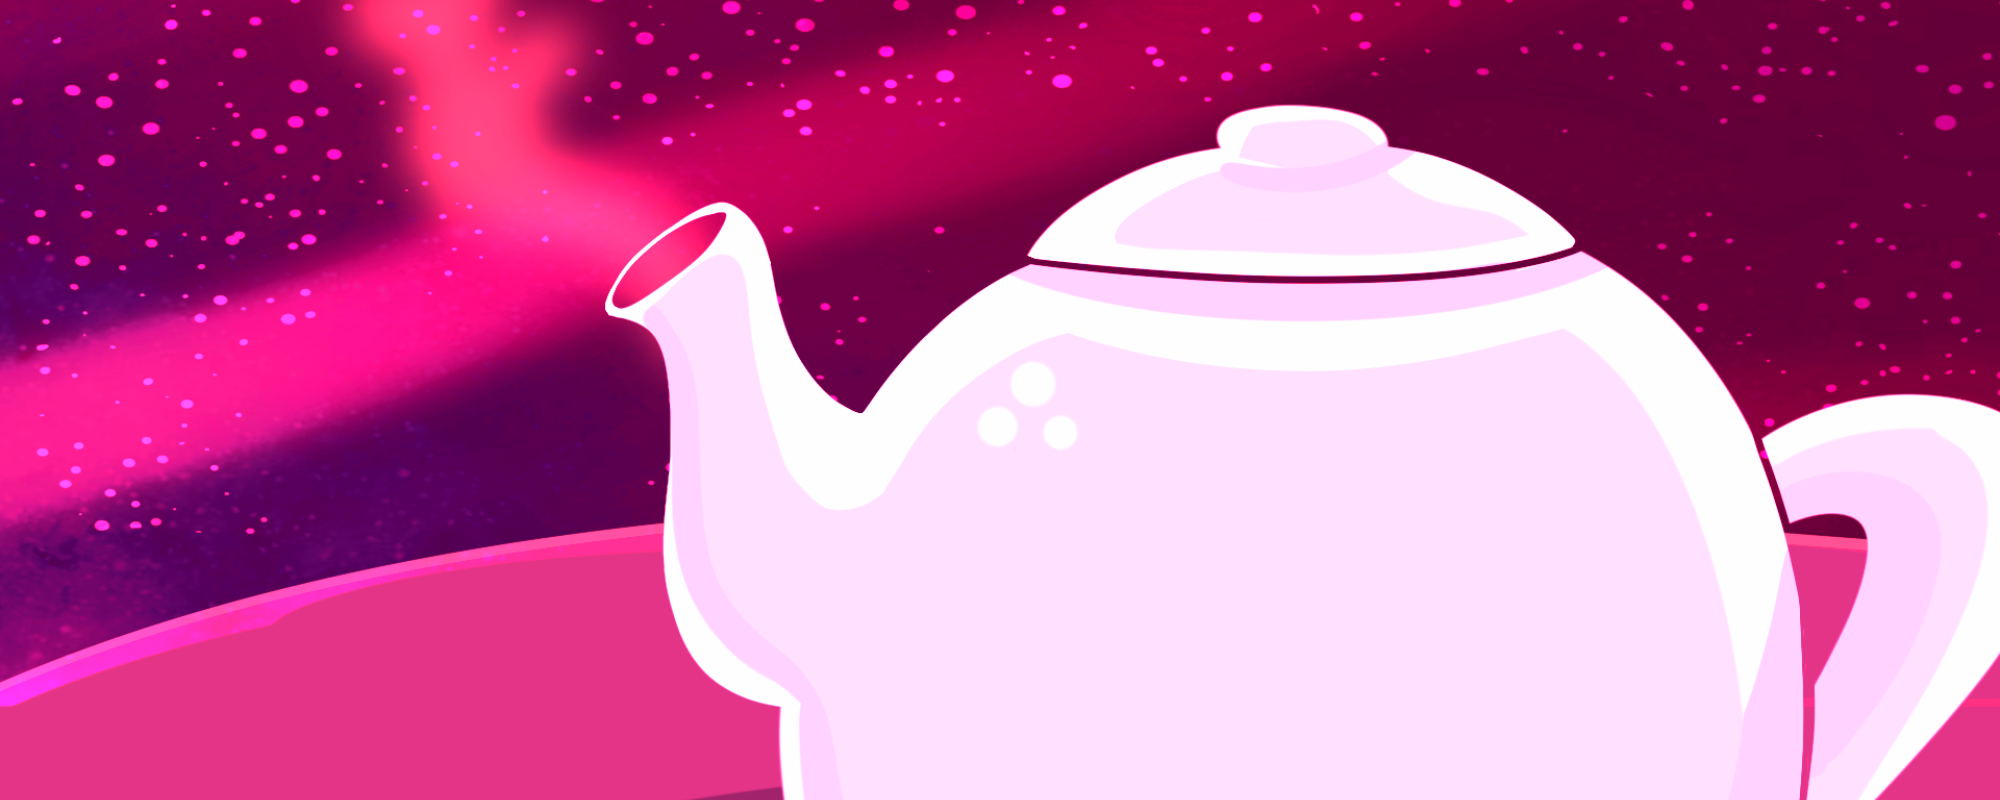 Image of a tea pot